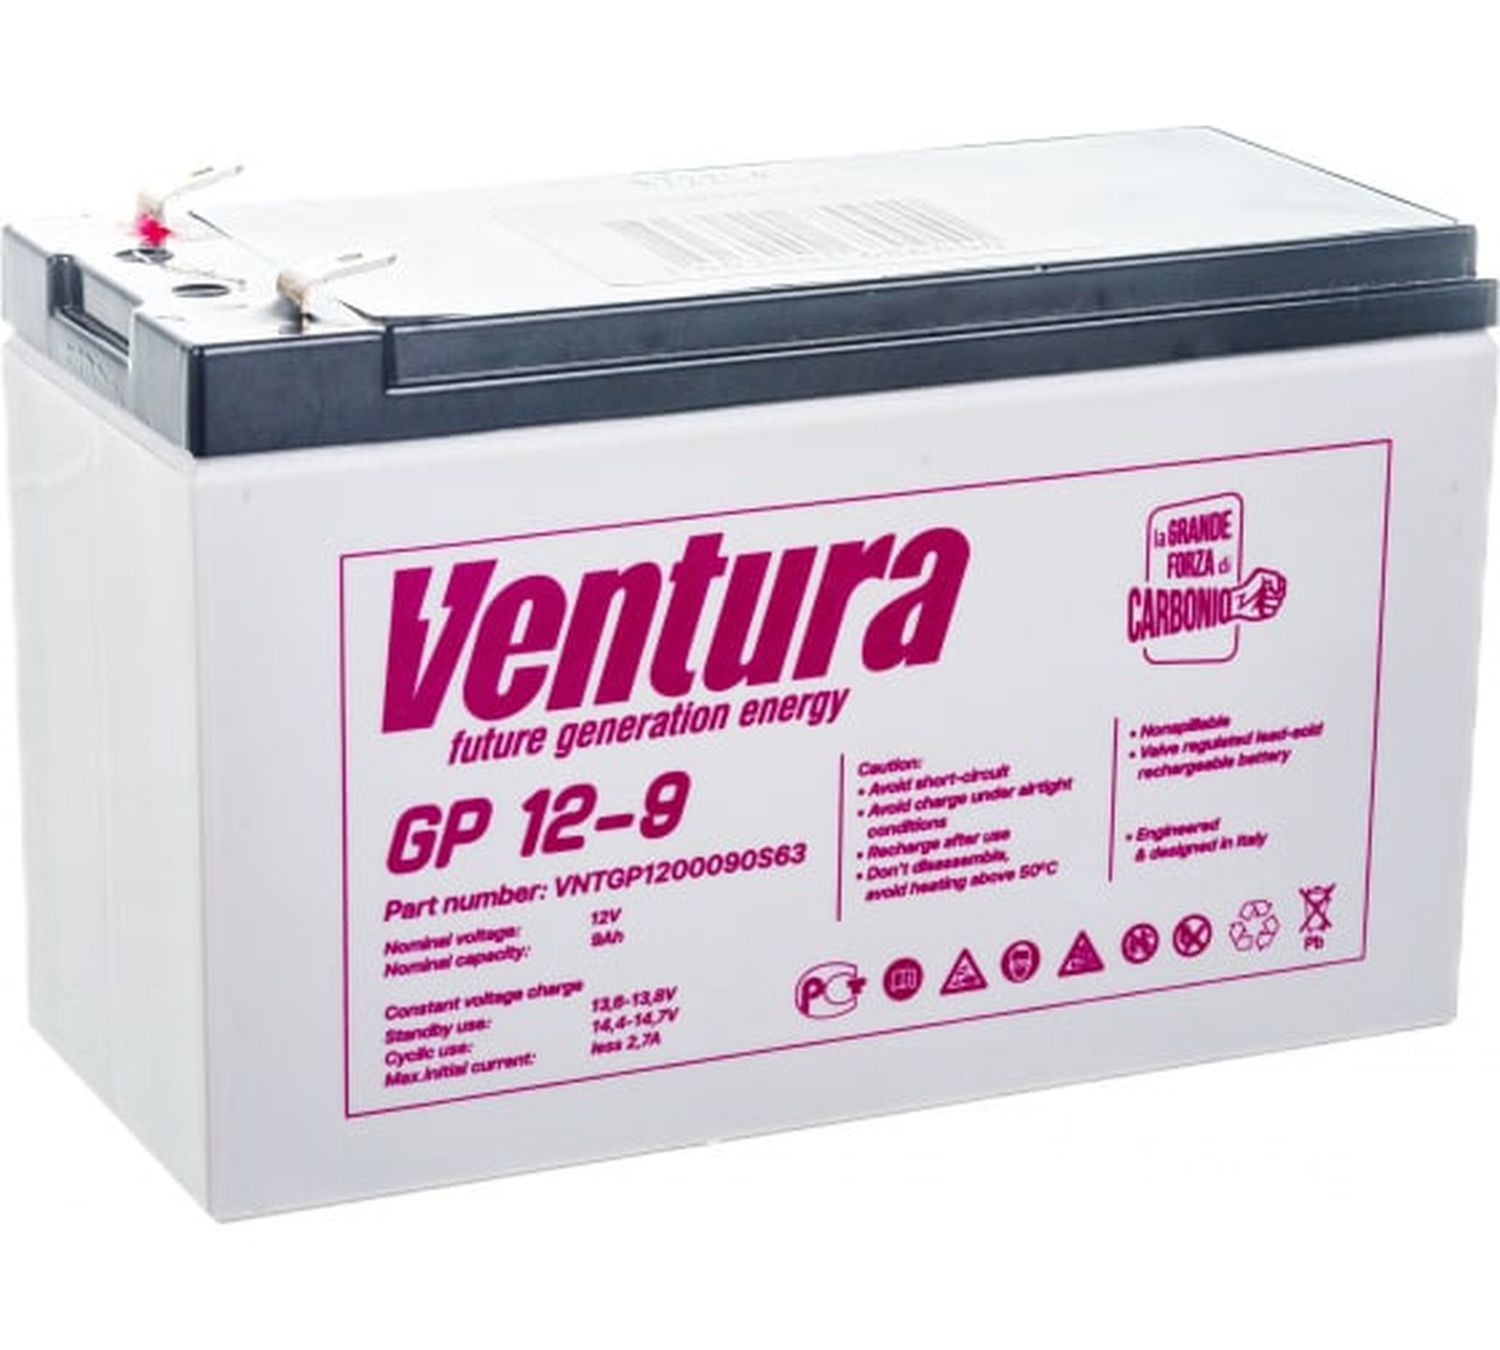 Gp 12 12 s. Ventura GP 12-9. Аккумулятор Ventura GP 12-12. Ventura GP 12-9 12в 9 а·ч. Ventura аккумуляторы gp12-1,2-s.